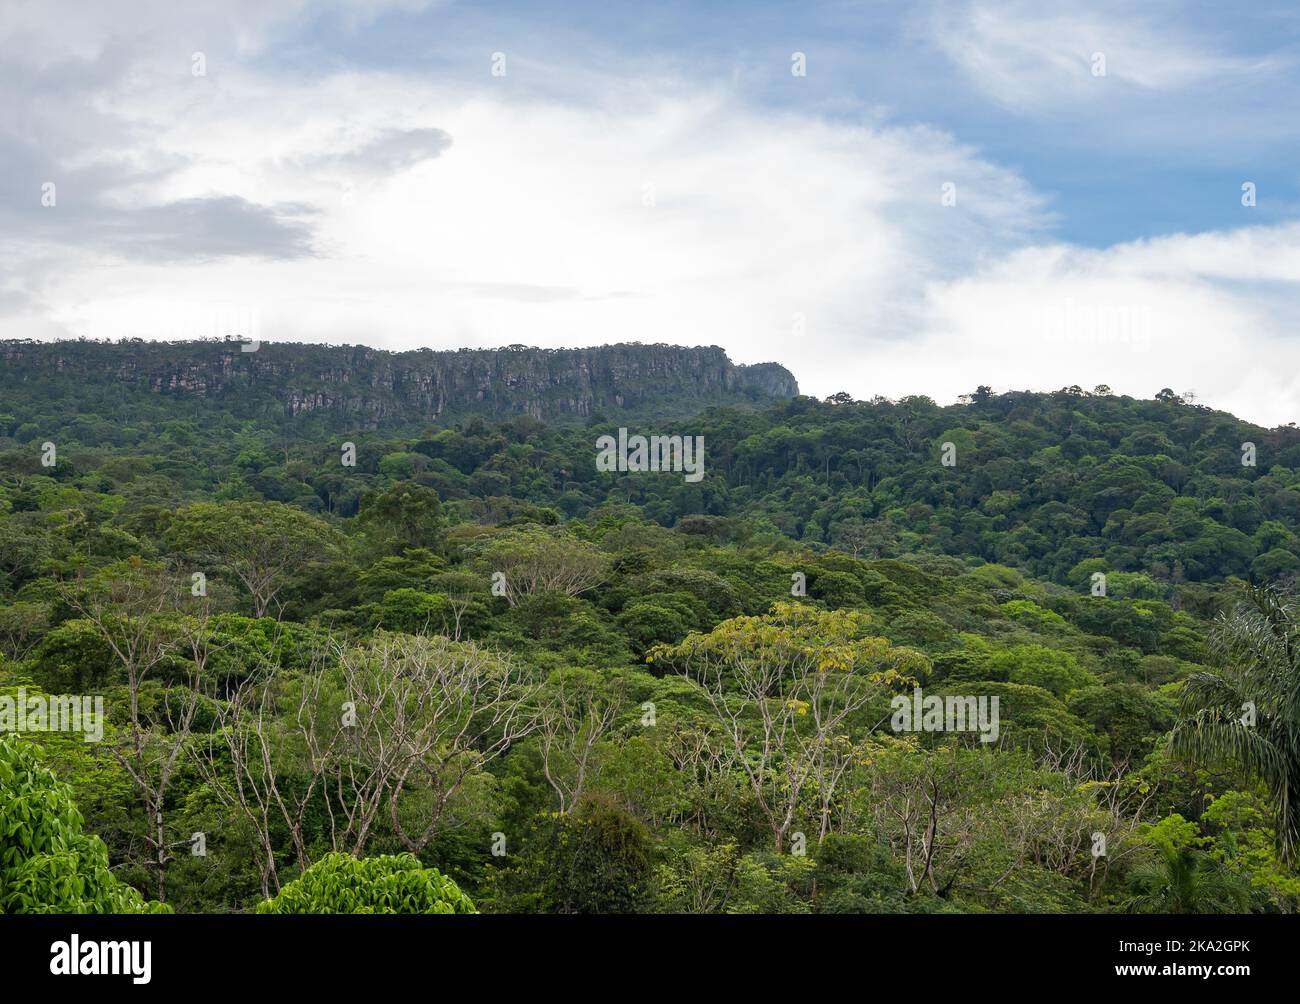 Die flachen Berge von Tepui ragen über dichten tropischen Wäldern hervor. Tepequém, Bundesstaat Roraima, Brasilien. Stockfoto